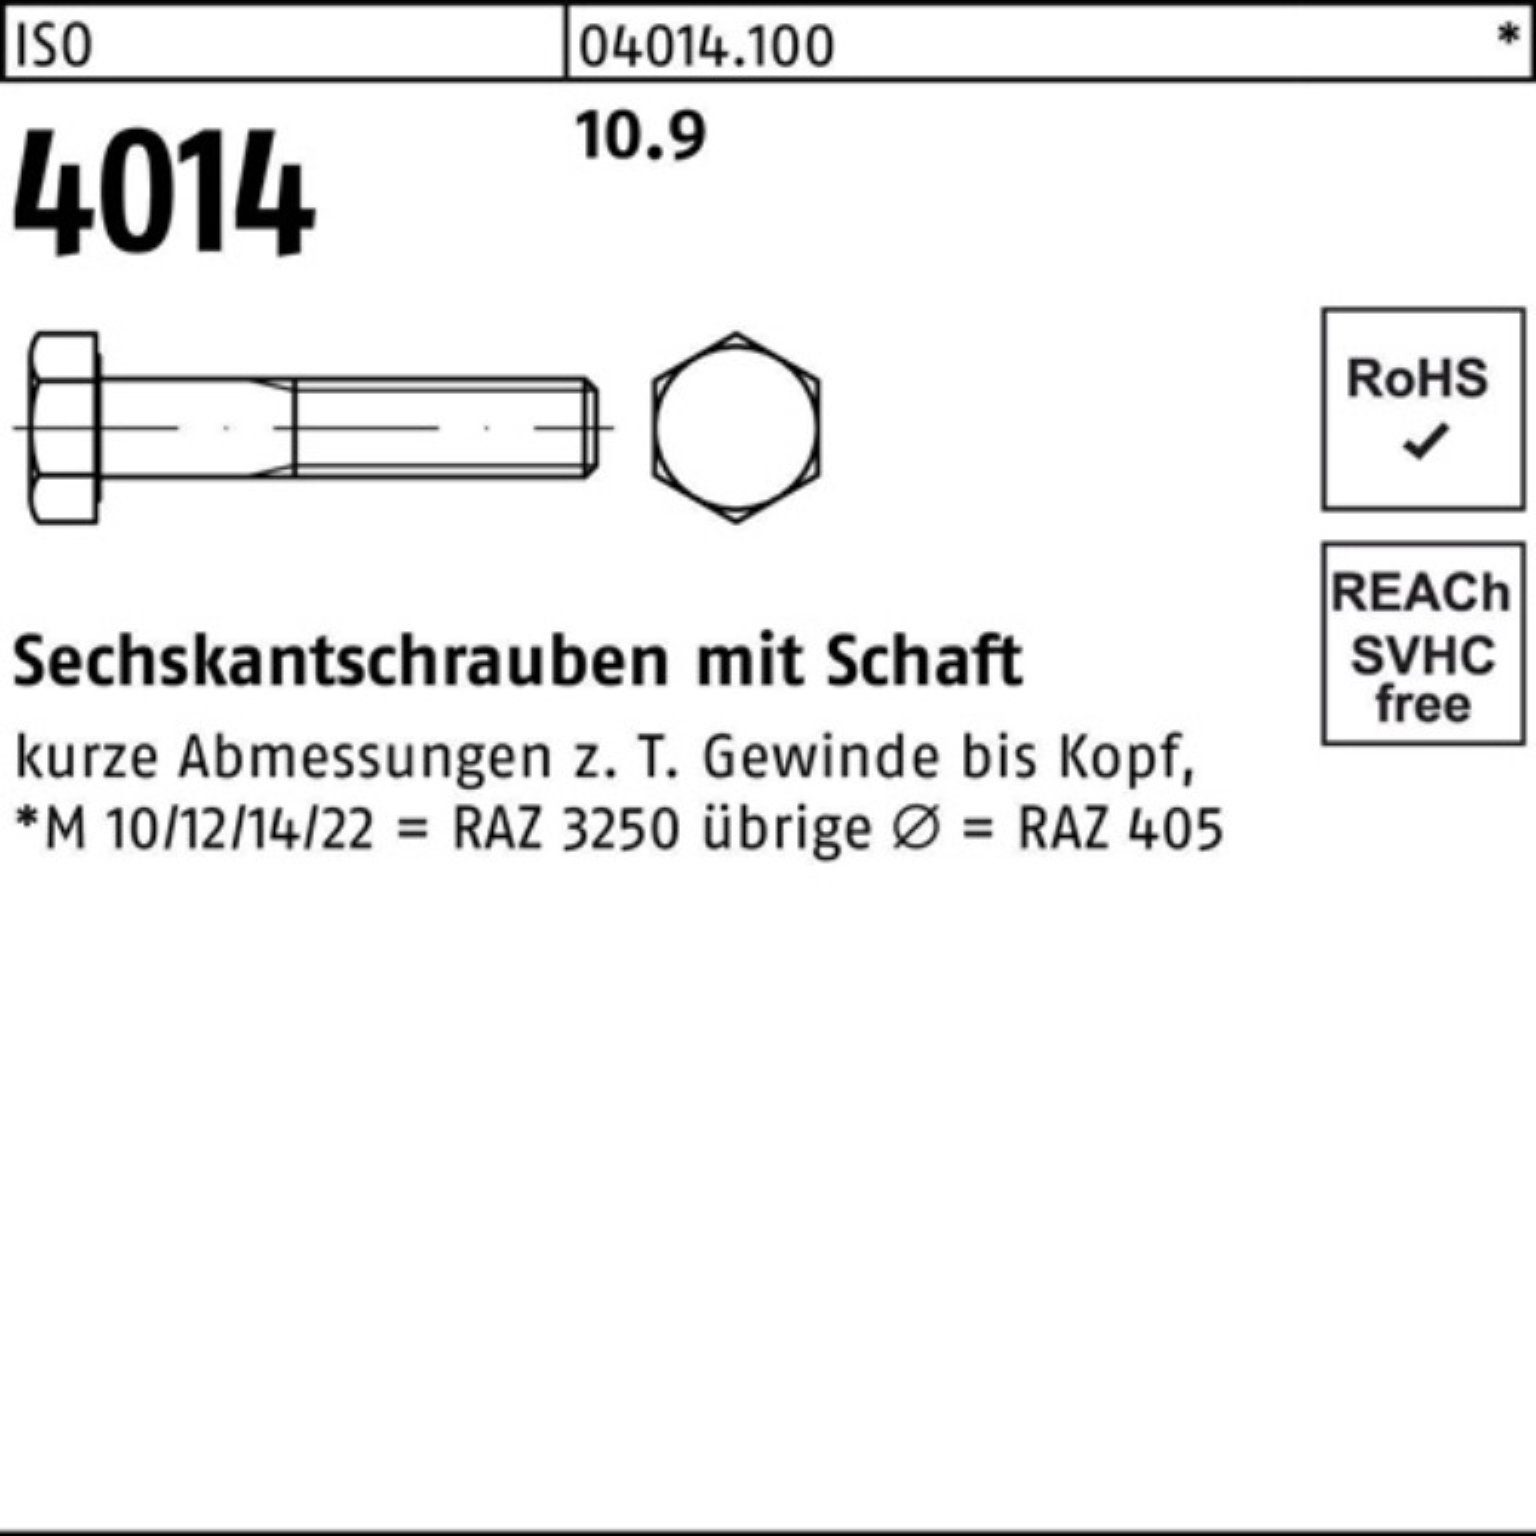 Schaft 25 M14x Pack Sechskantschraube 4014 100er ISO Bufab 10.9 Sechskantschraube I 200 Stück